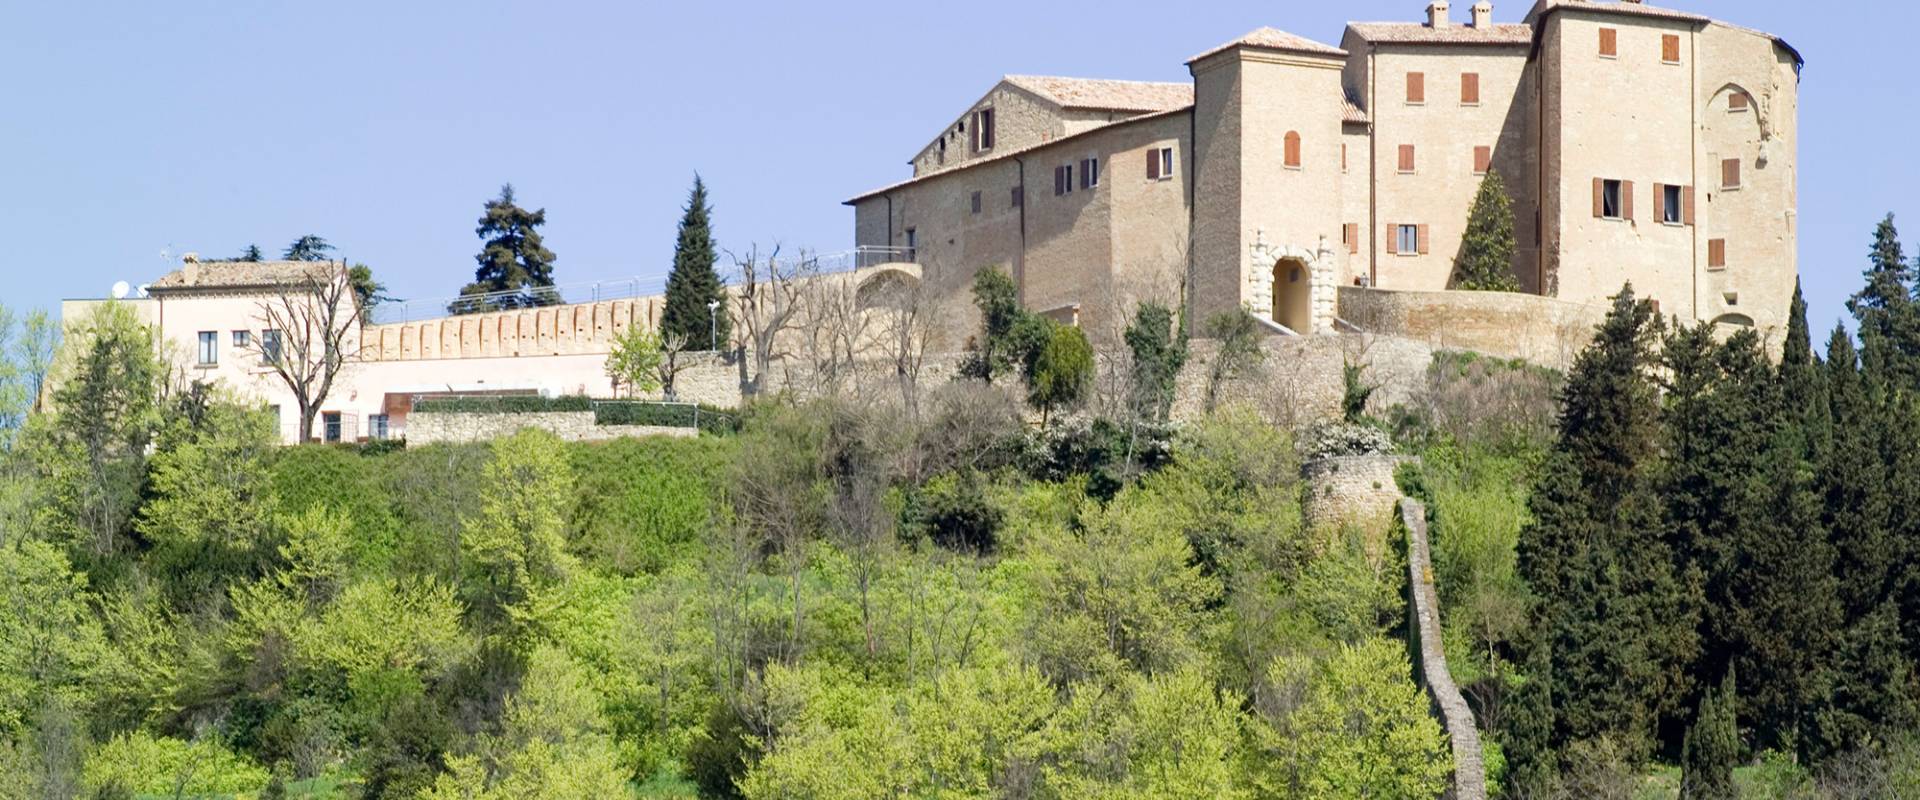 Rocca Vescovile di Bertinoro foto di Salvatore Mirabella